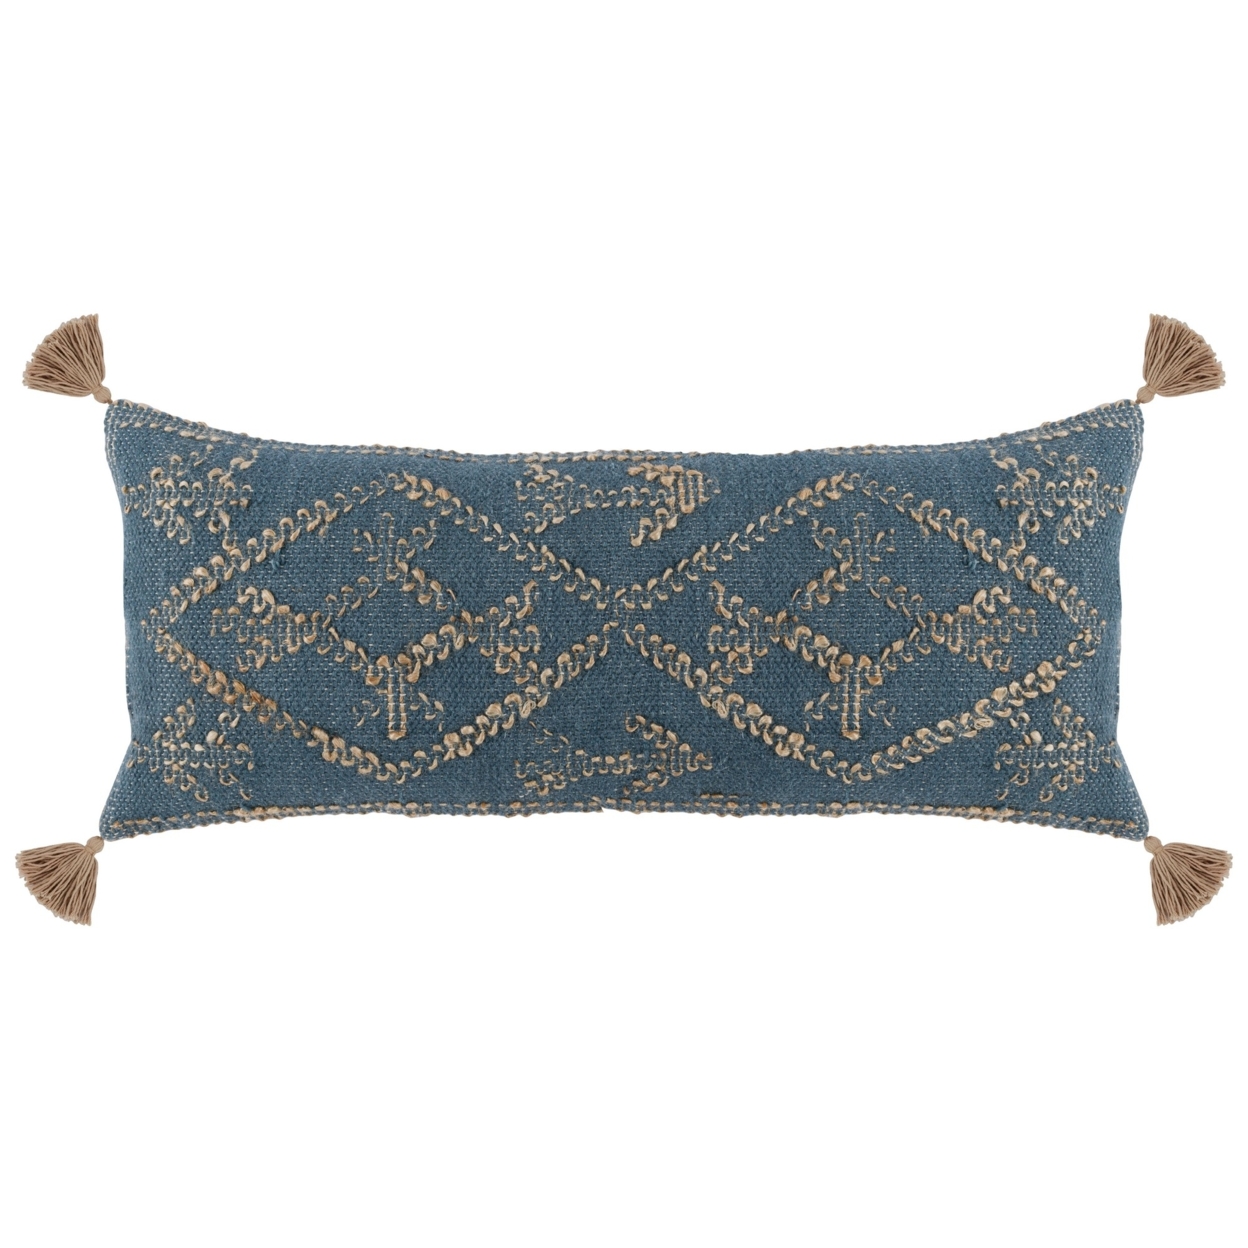 16 X 36 Accent Lumbar Pillow, Down, Blue Wool, Jute Woven Details, Tassels- Saltoro Sherpi